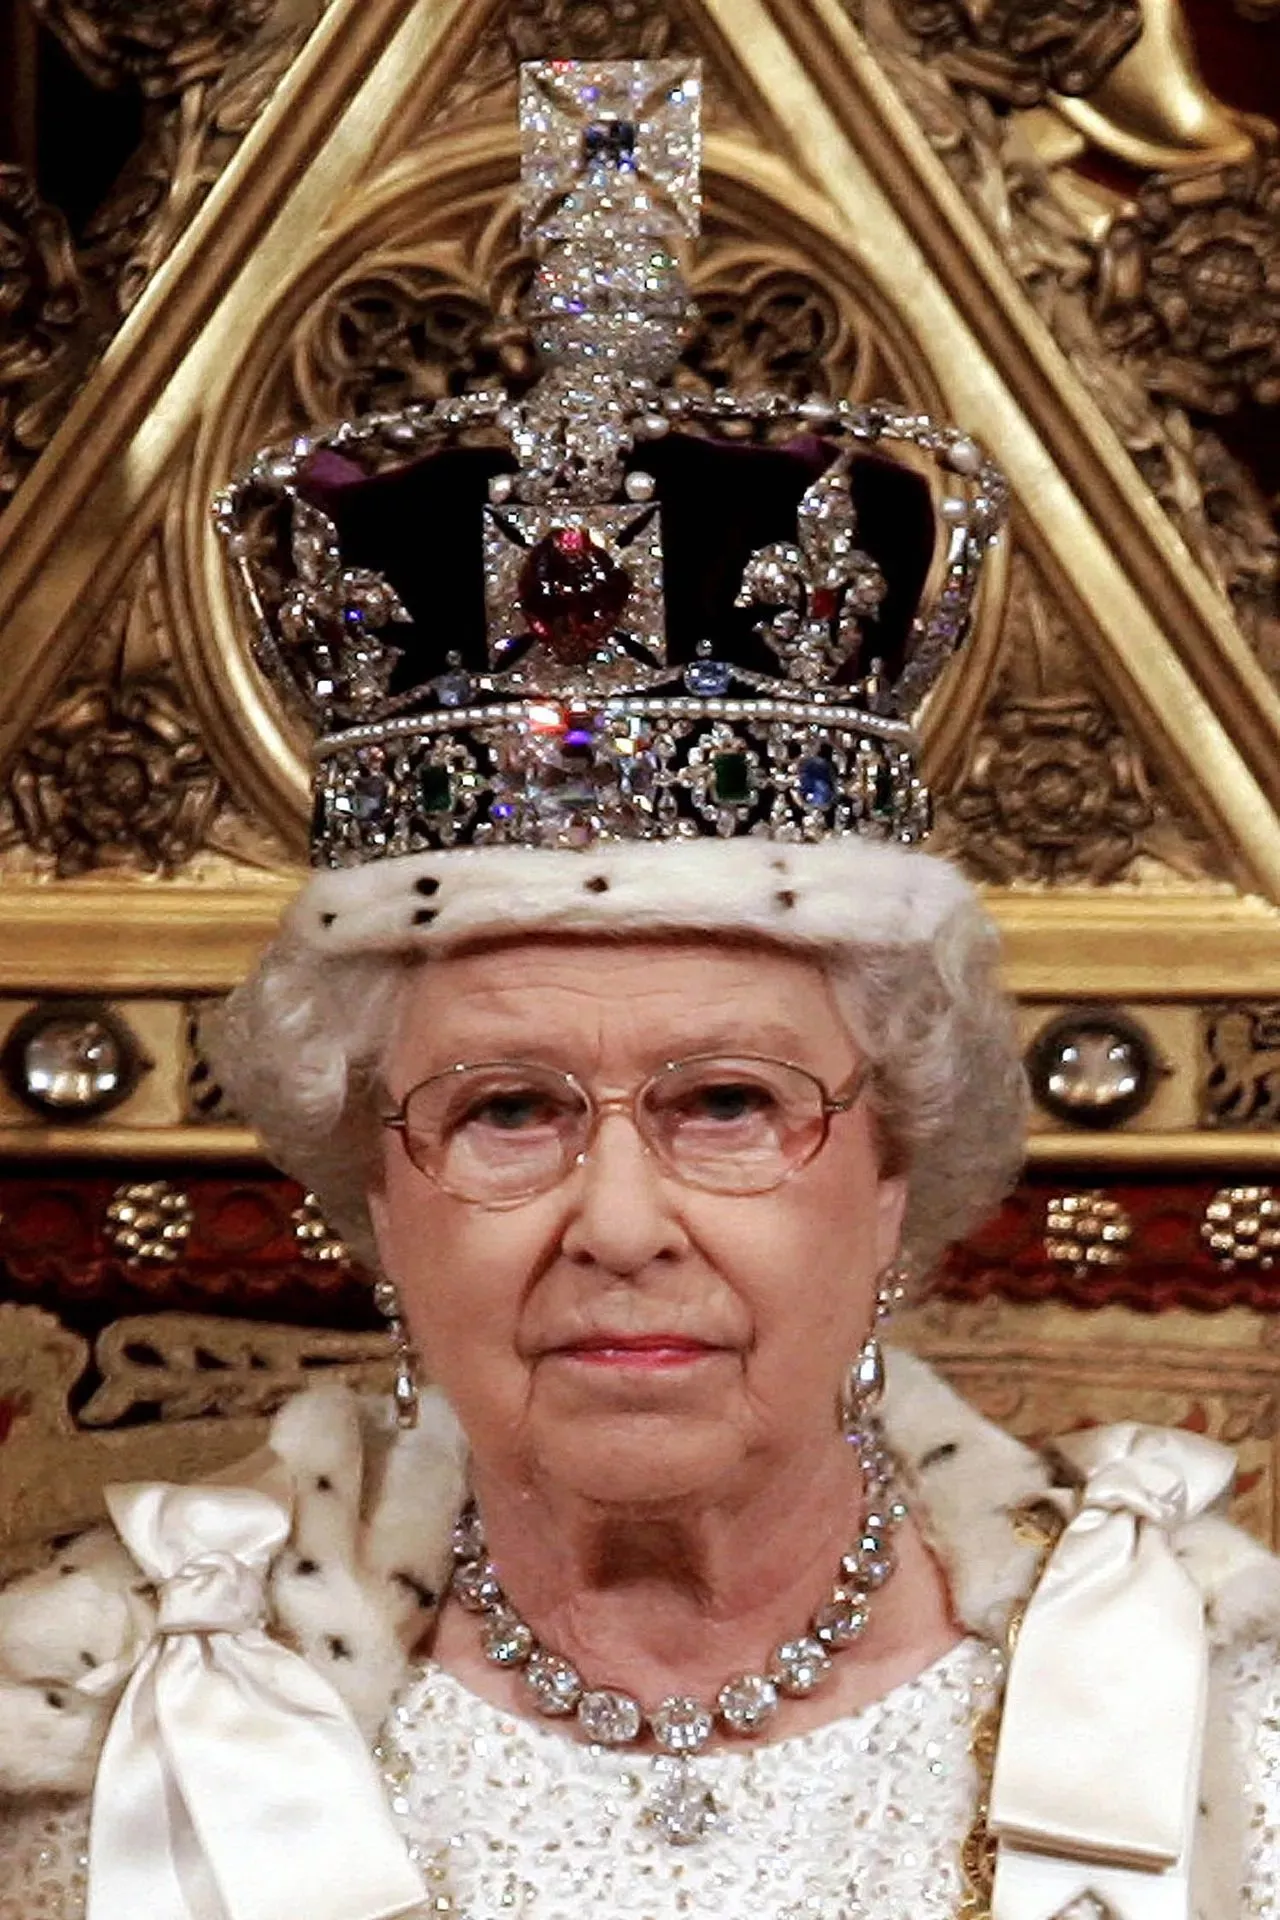 تيجان الملكة اليزابيث: صور وتاريخ أشهر القطع التي اعتمدتها